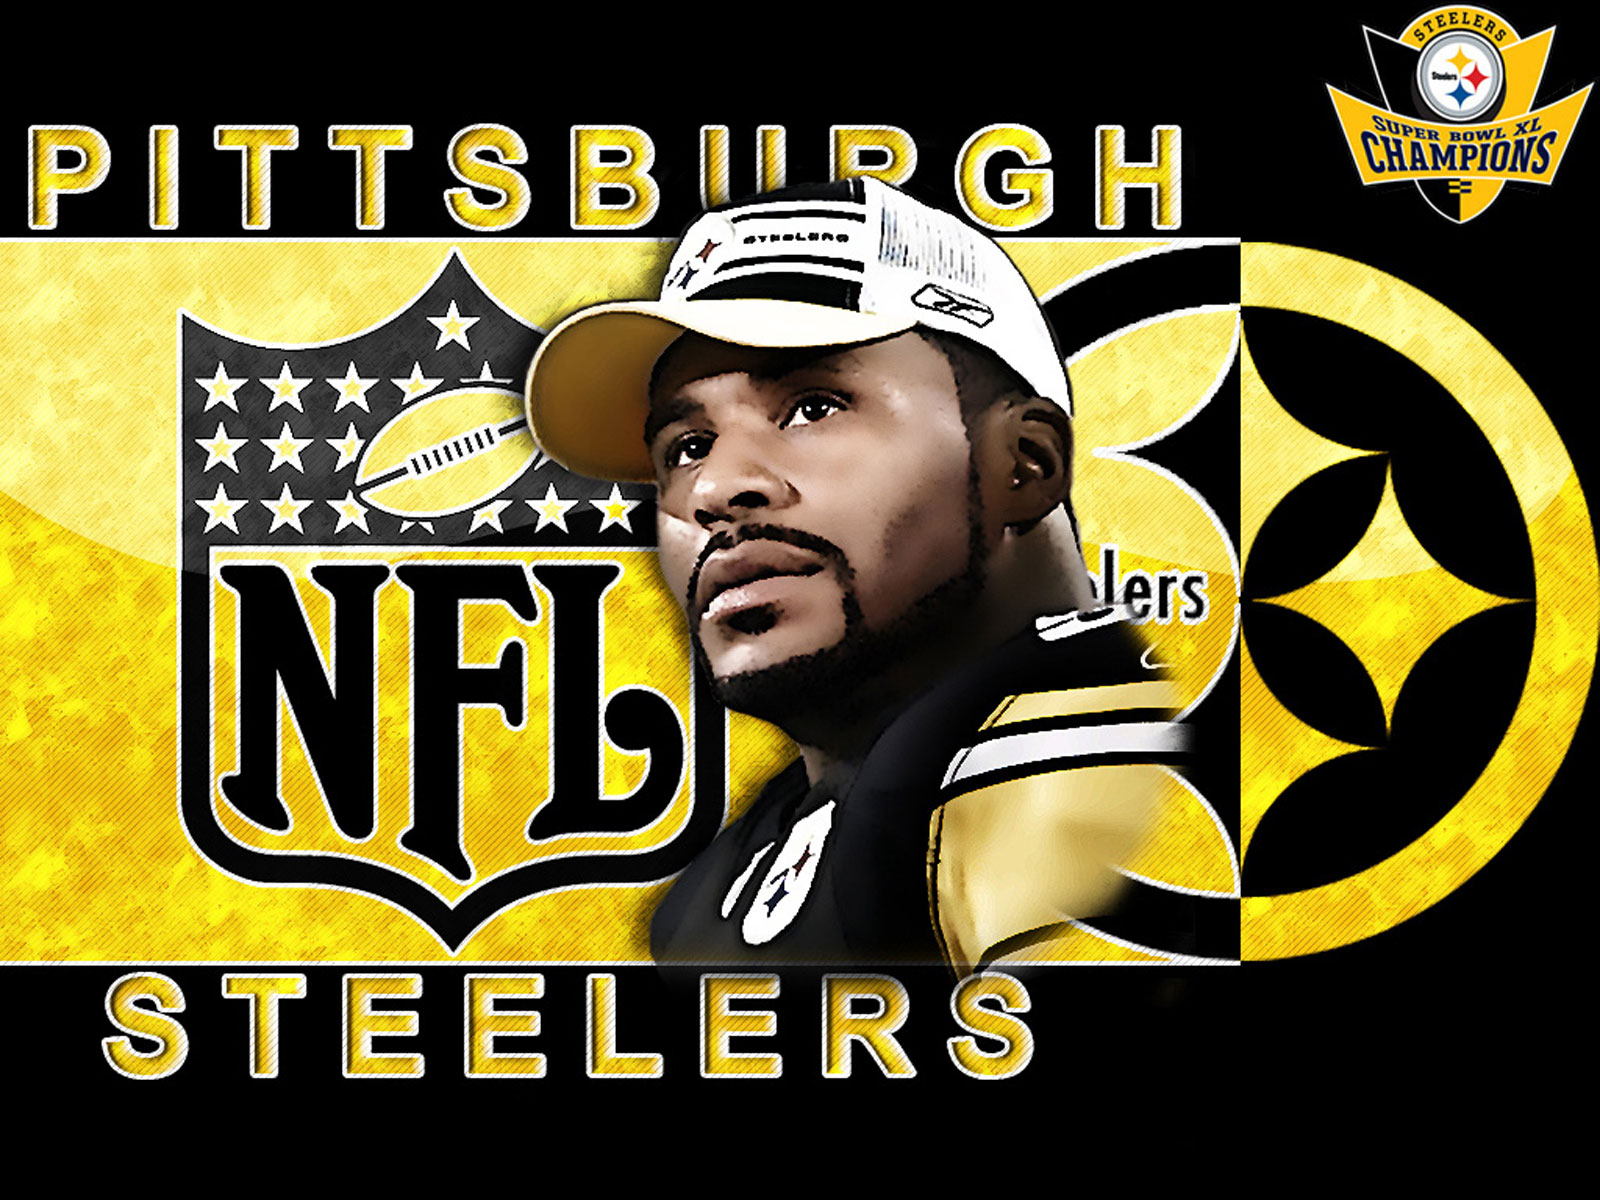 Free Pittsburgh Steelers wallpaper desktop image Pittsburgh Steelers 1600x1200